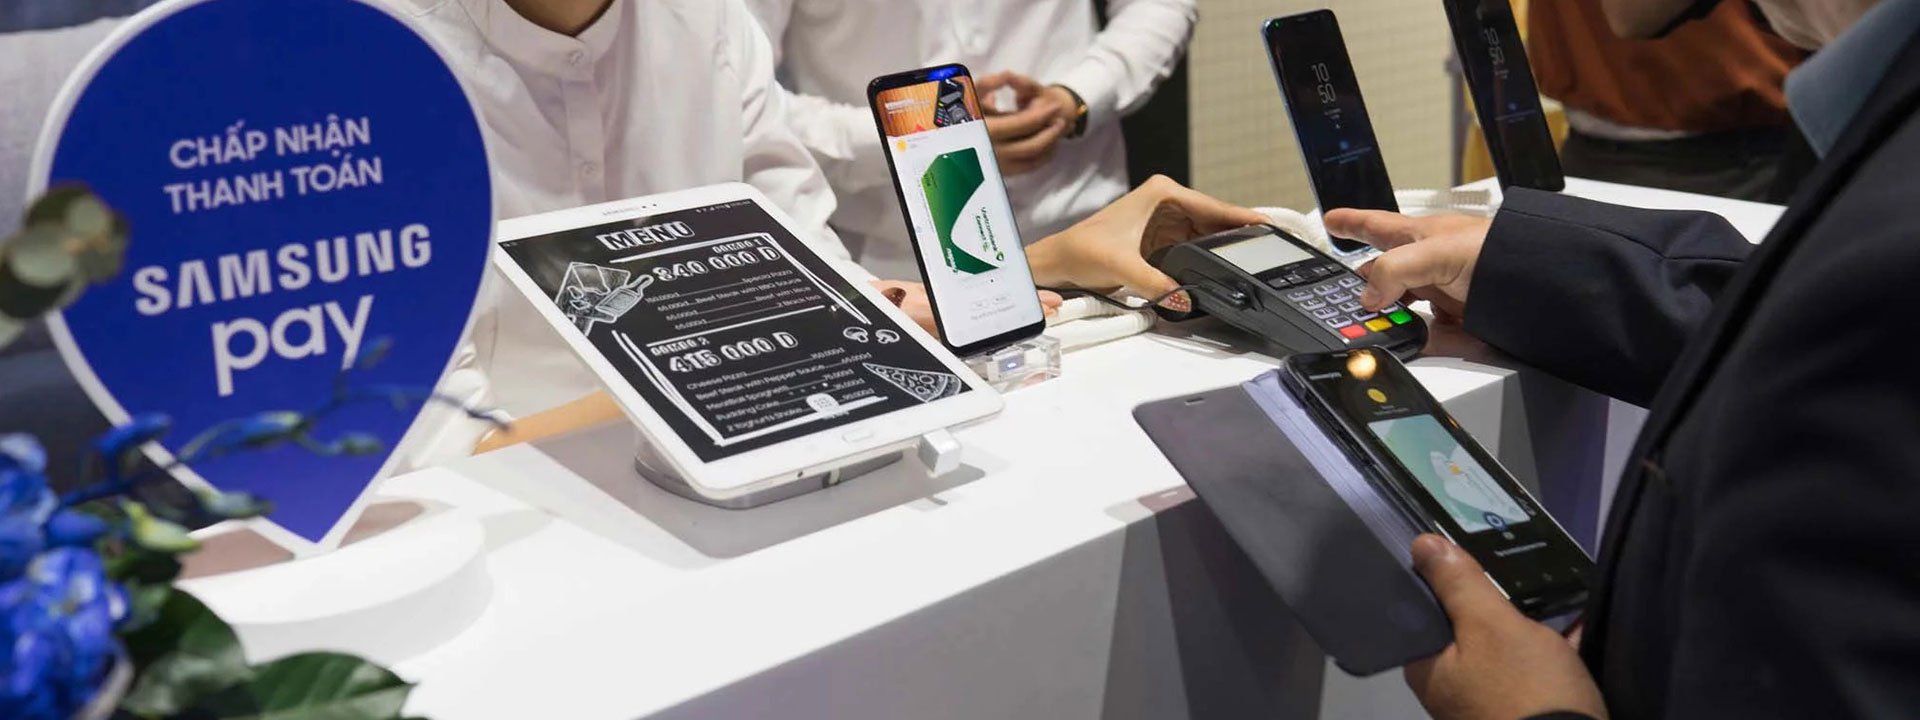 Hướng dẫn từng bước cách thêm thẻ thanh toán với Samsung Pay [HOT]